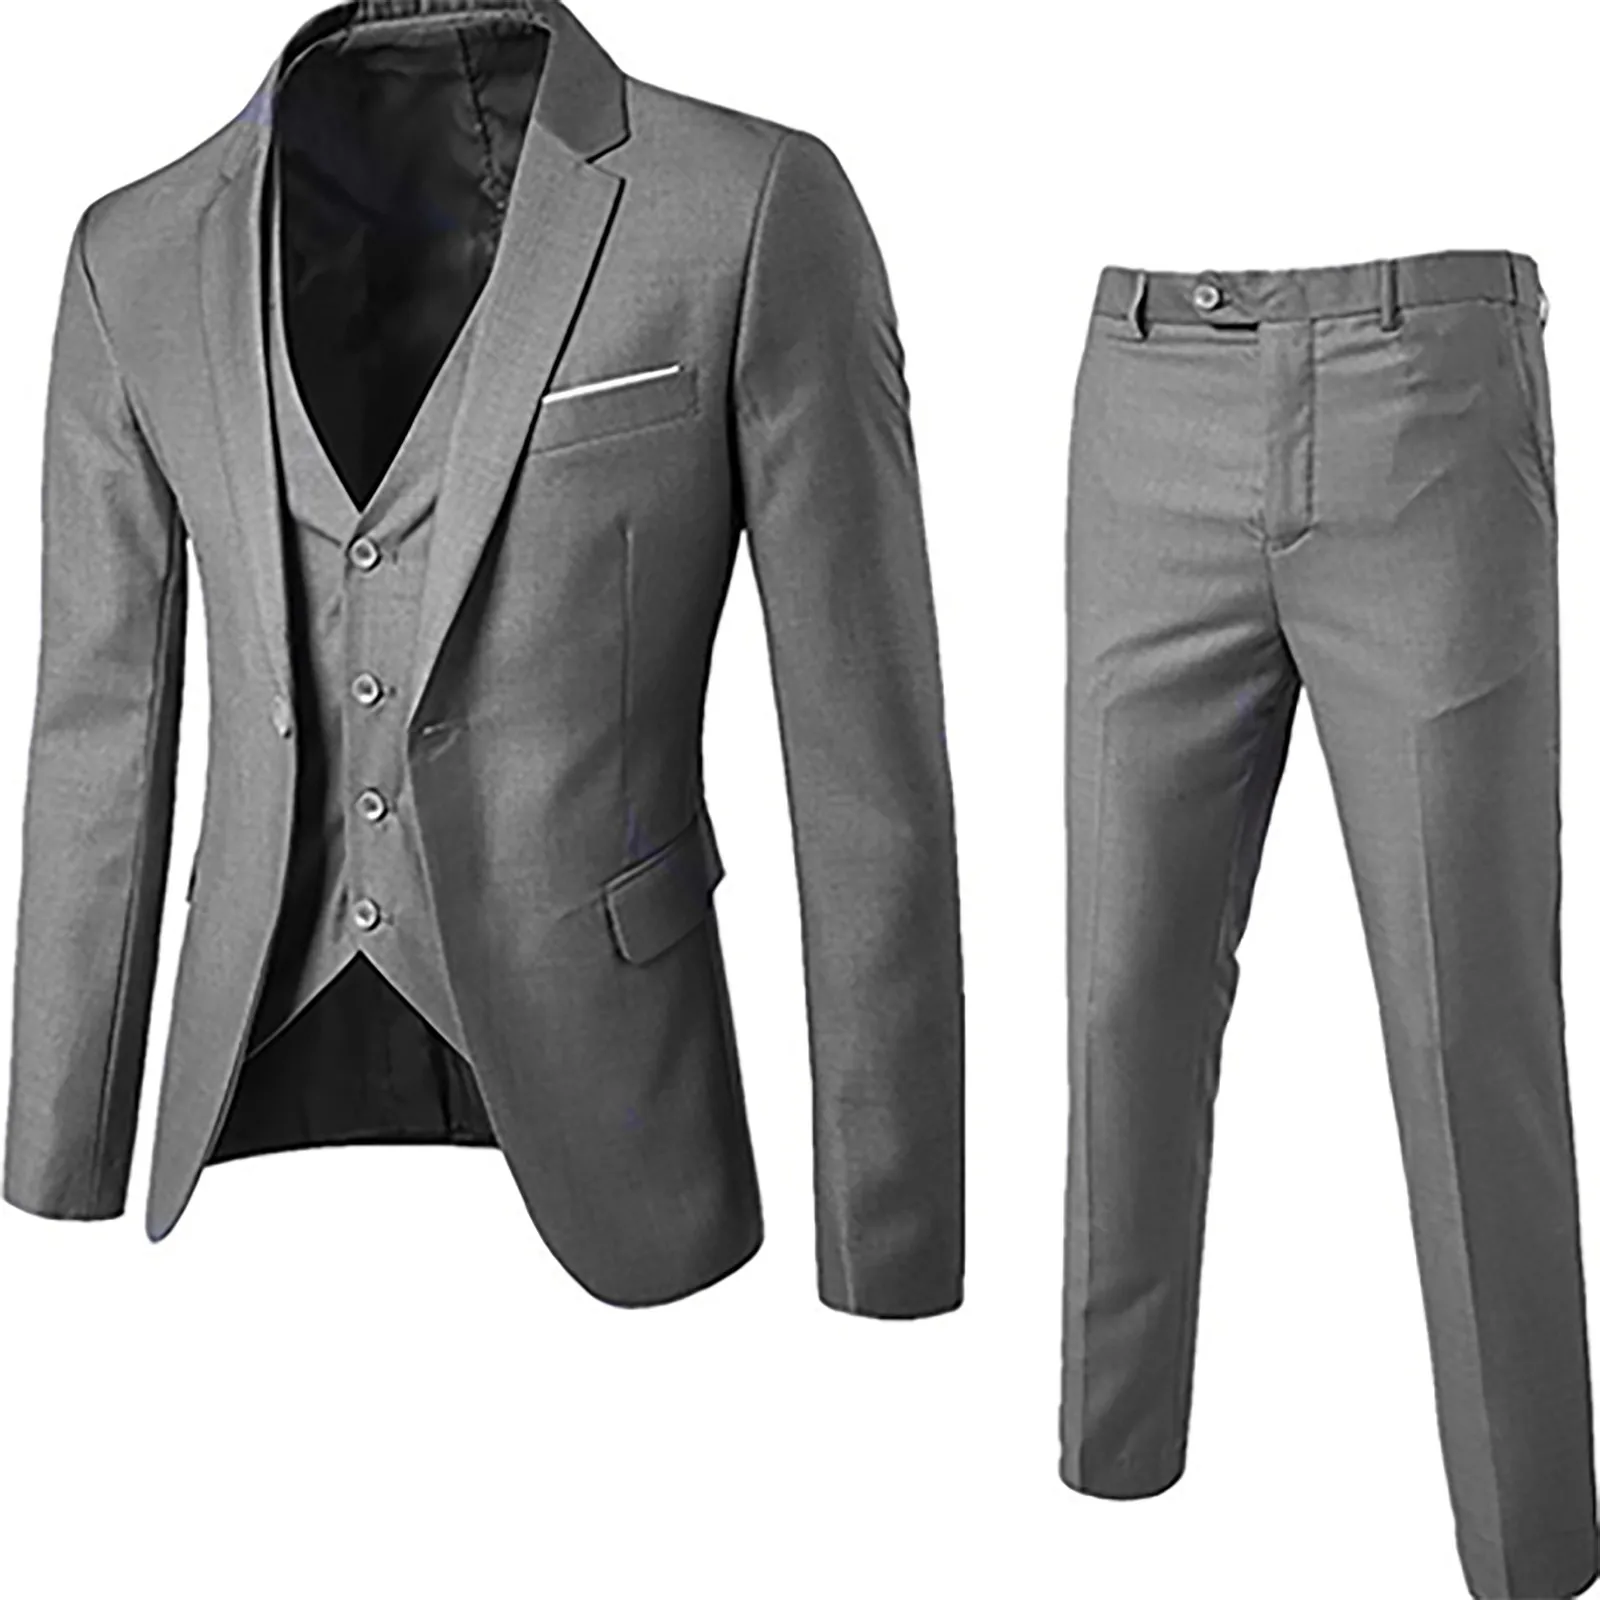 

Костюм облегающий мужской из 3-х предметов, пиджак, жилет и брюки на одной пуговице, деловой костюм для свадьбы, вечеринки